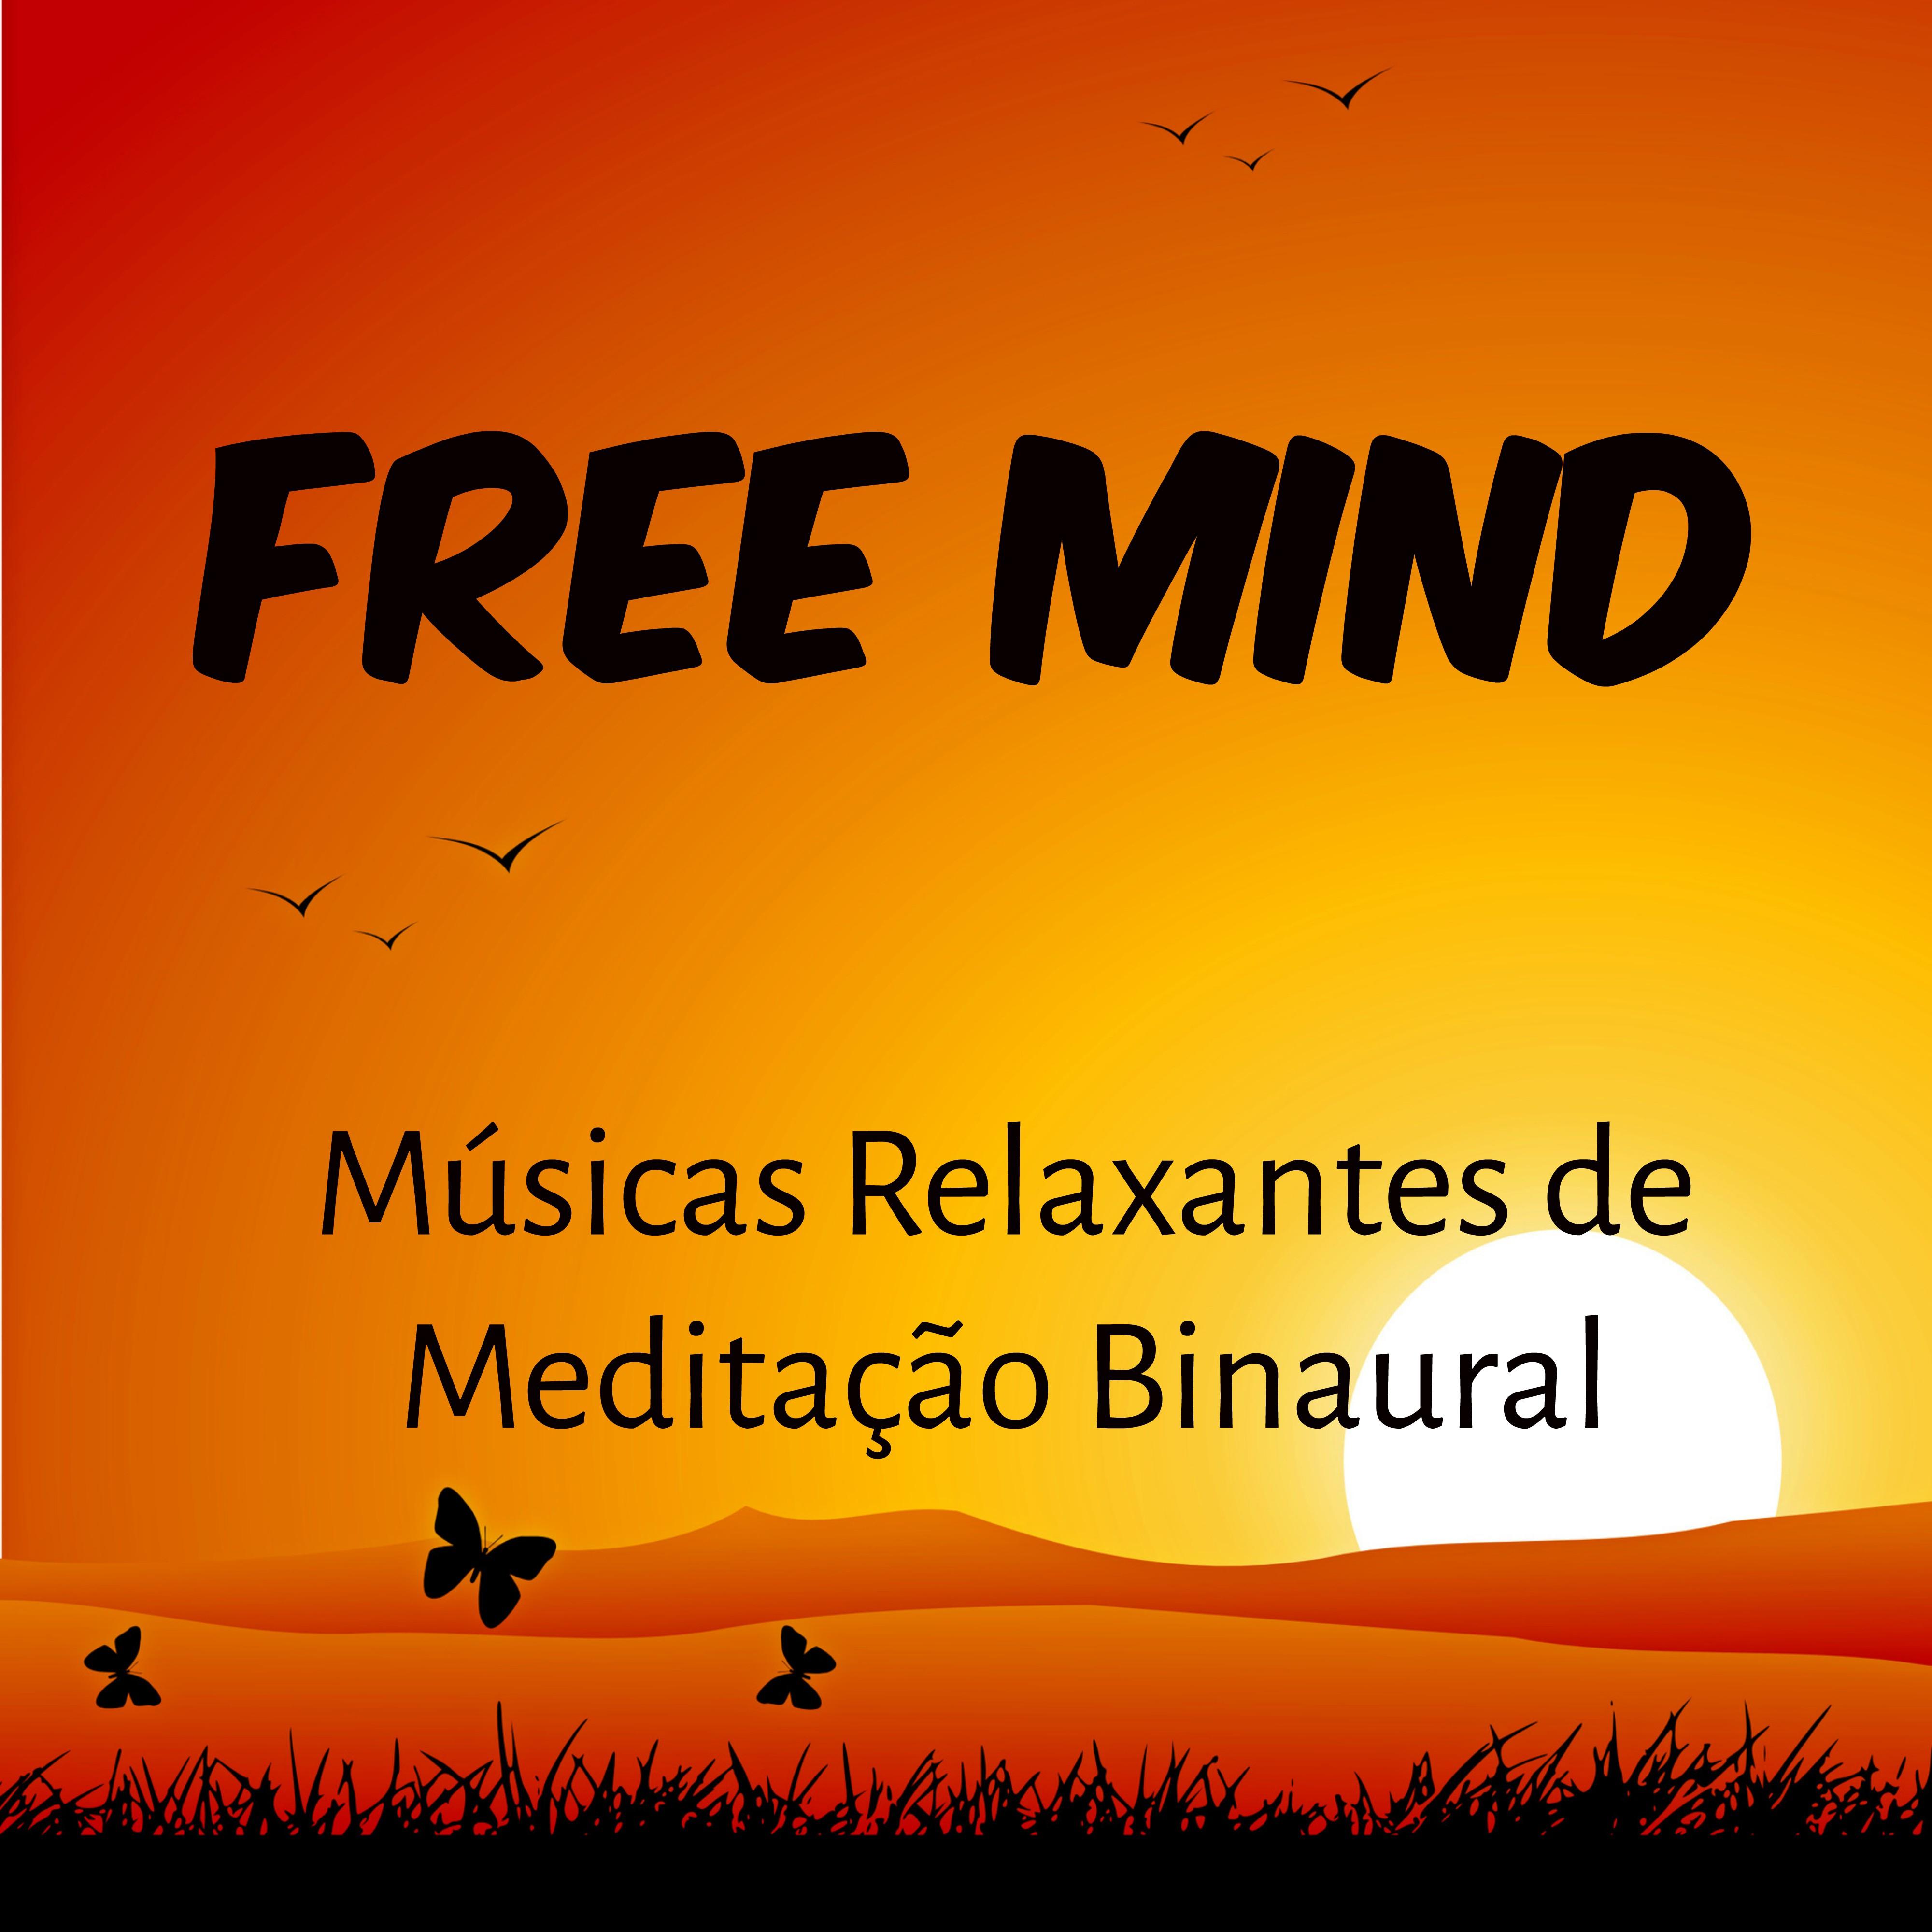 Free Mind - Músicas Relaxantes de Meditação Binaural para Bem Estar Fisico Solução de Problemas e Saude Mental